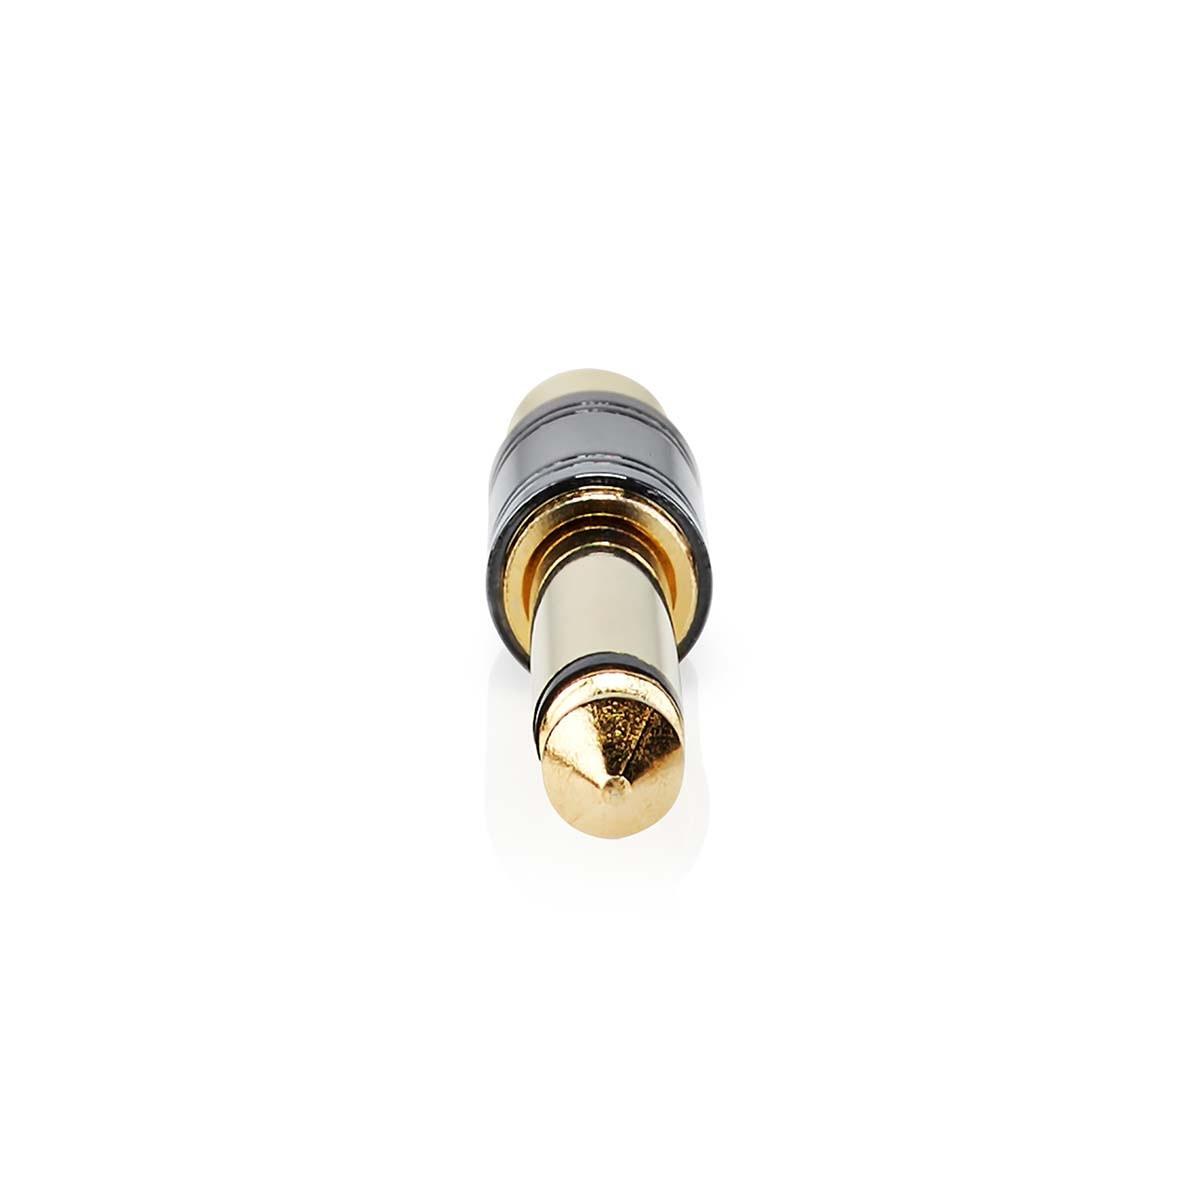 Nedis  Mono-Audio-Adapter | 6,35 mm Hane | RCA Hona | Goldblech | Rak | Metall | Metall | 1 St. | Schloss 